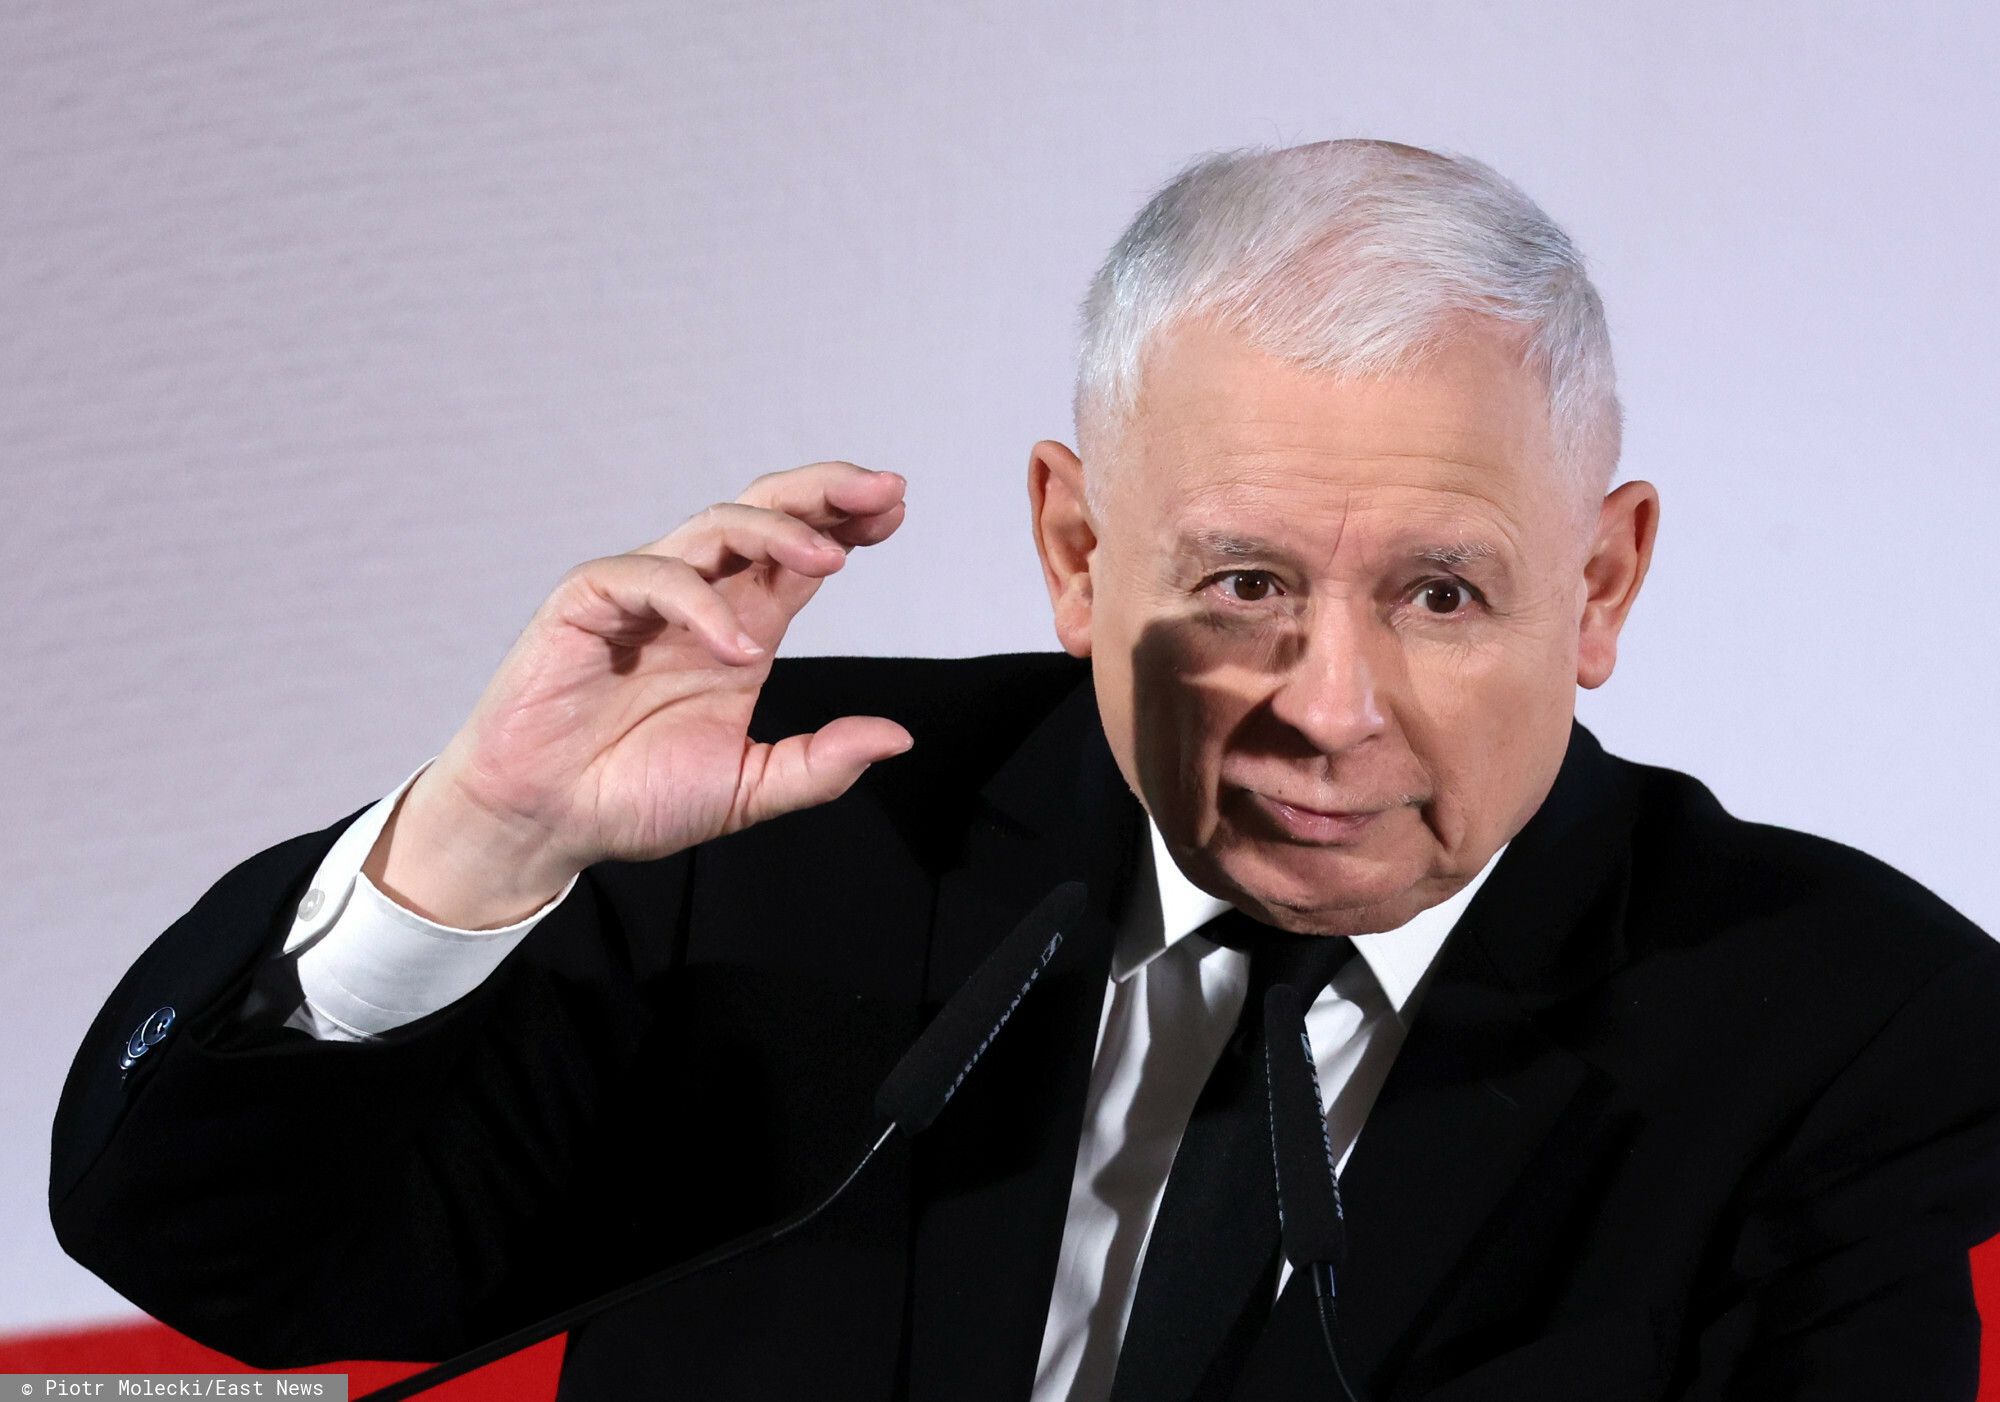 Według nieoficjalnych informacji Jarosław Kaczyński będzie chciał dokonać zmian w Konstytucji.